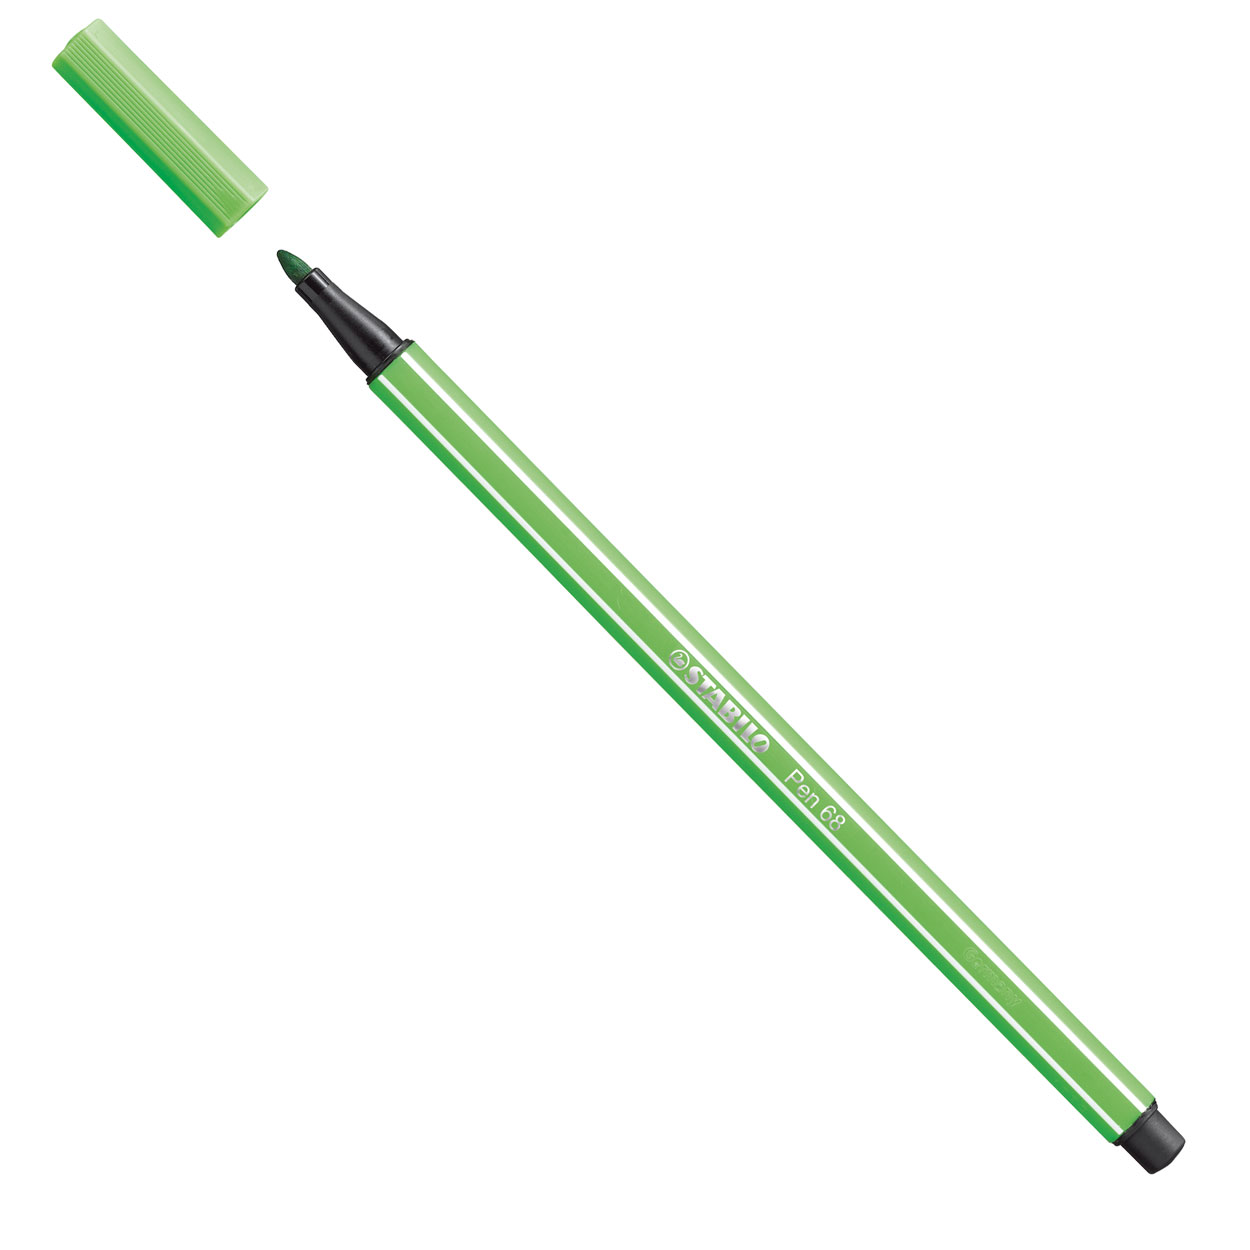 STABILO Pen 68 - Feutre - Vert feuille (68/43)